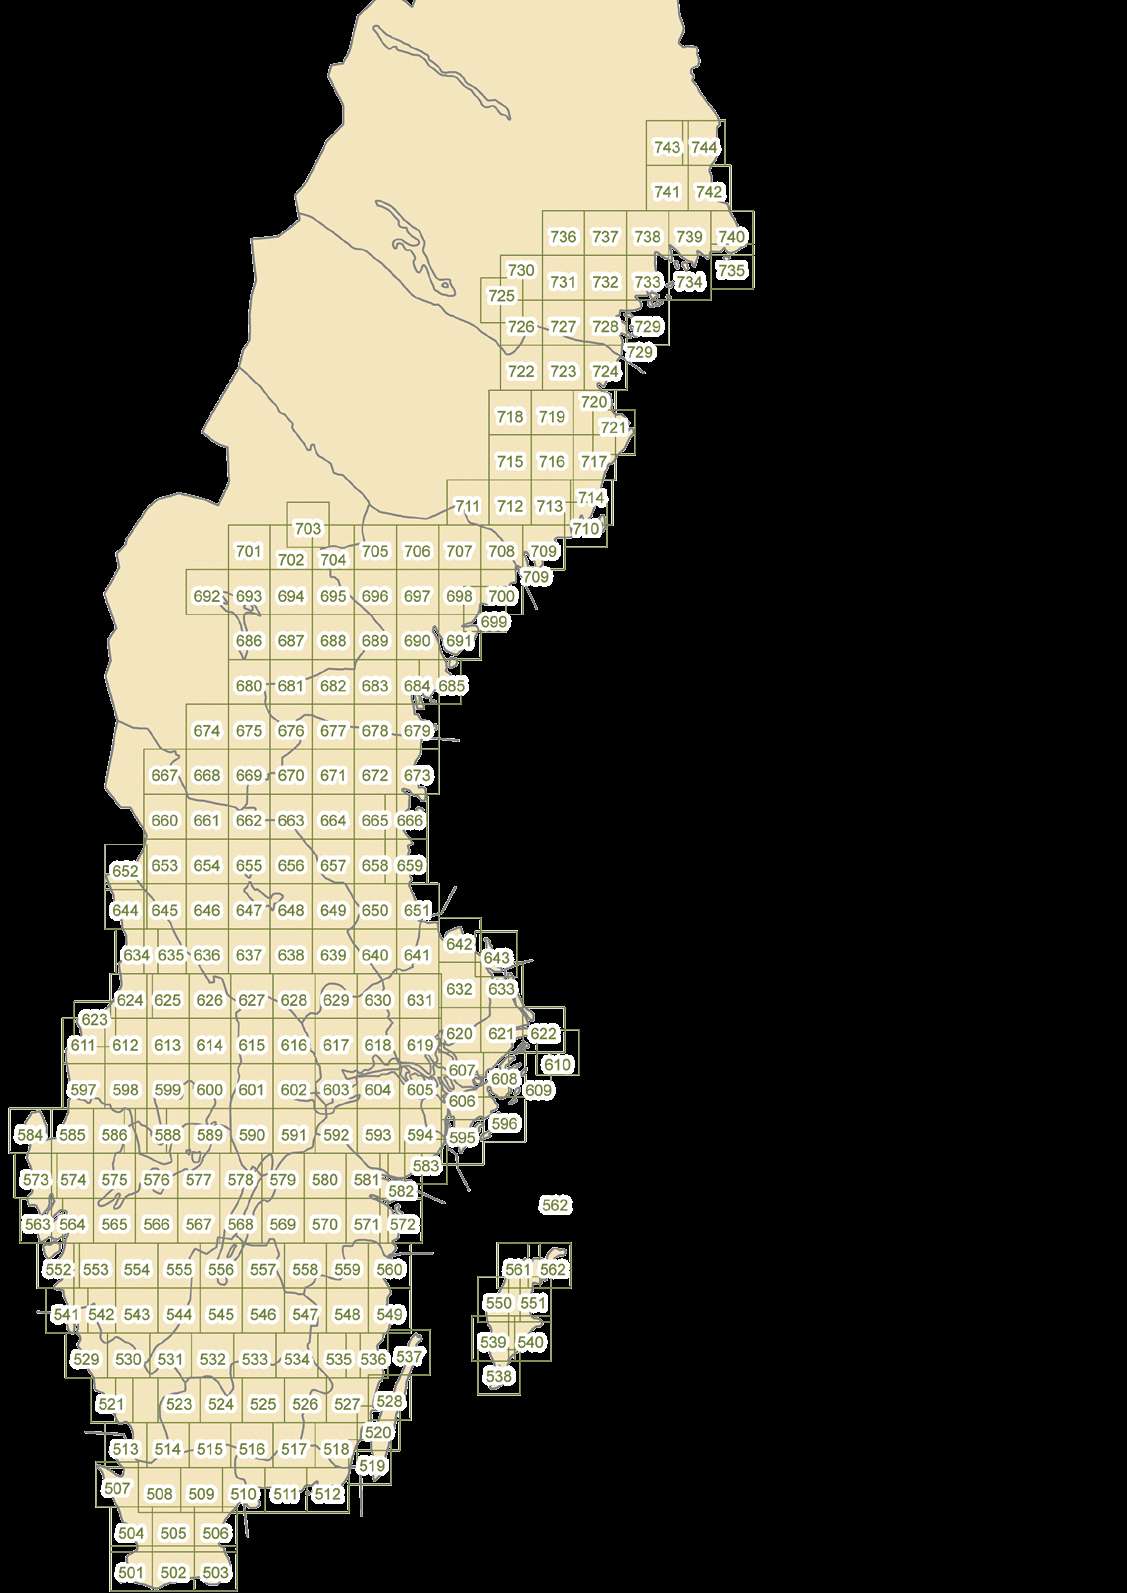 terrängkartan / 2015 Terrängkartan omfattar 244 blad Terrängkartan trycks i skala 1:50 000 med